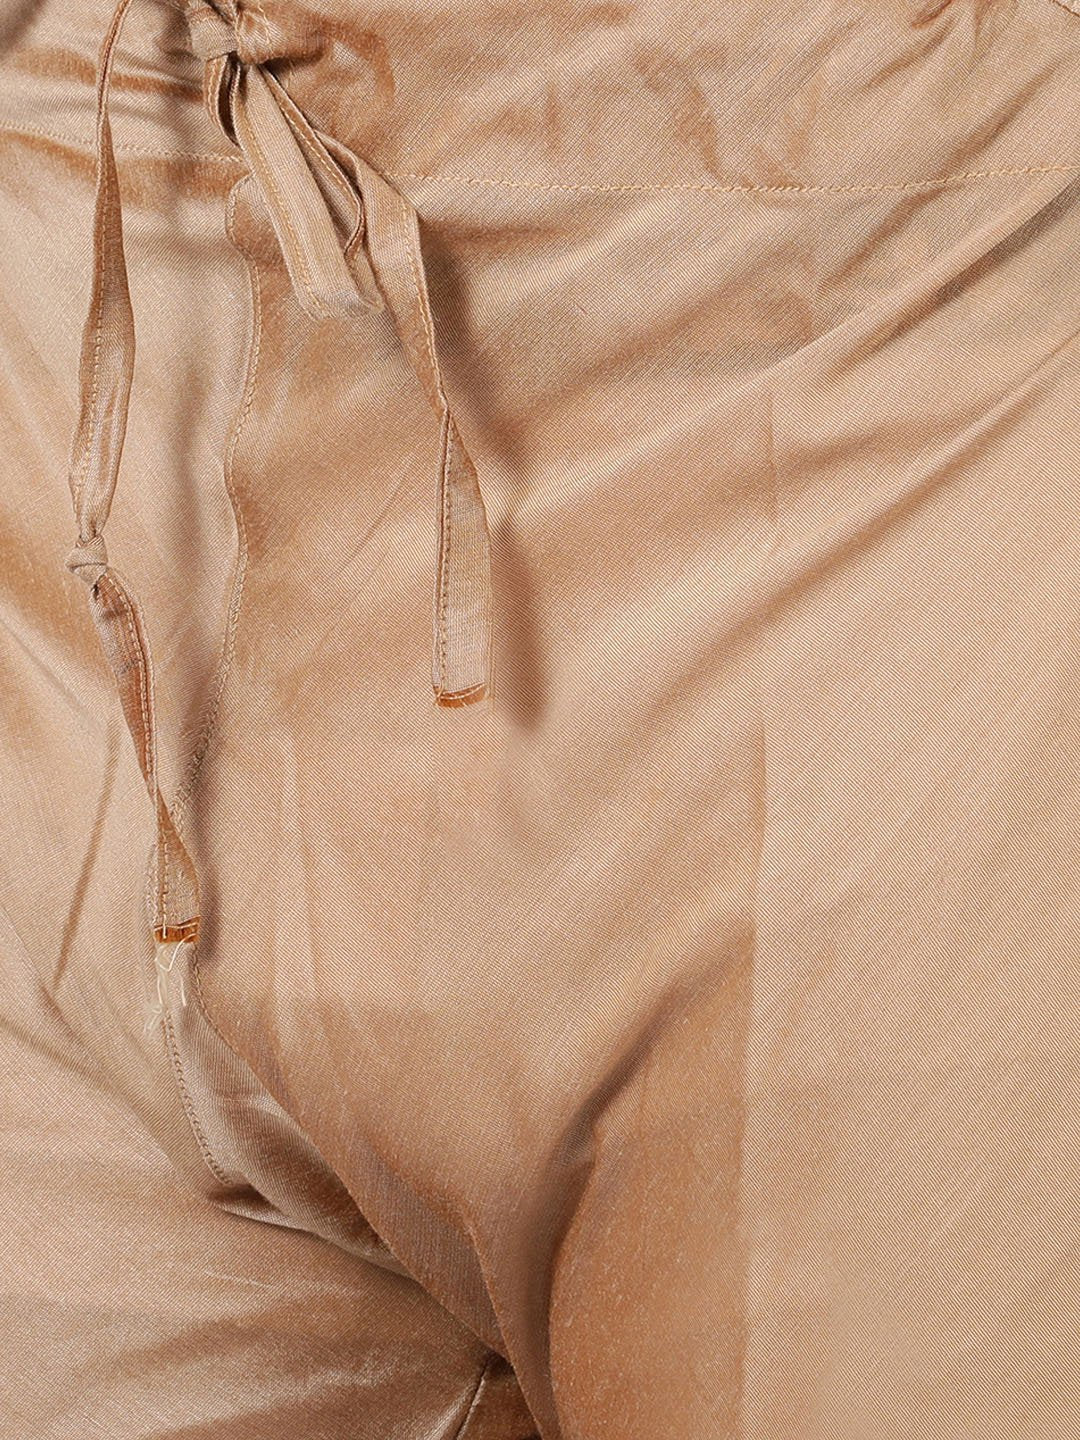 Men's Gold Cotton Blend Kurta and Pyjama Set